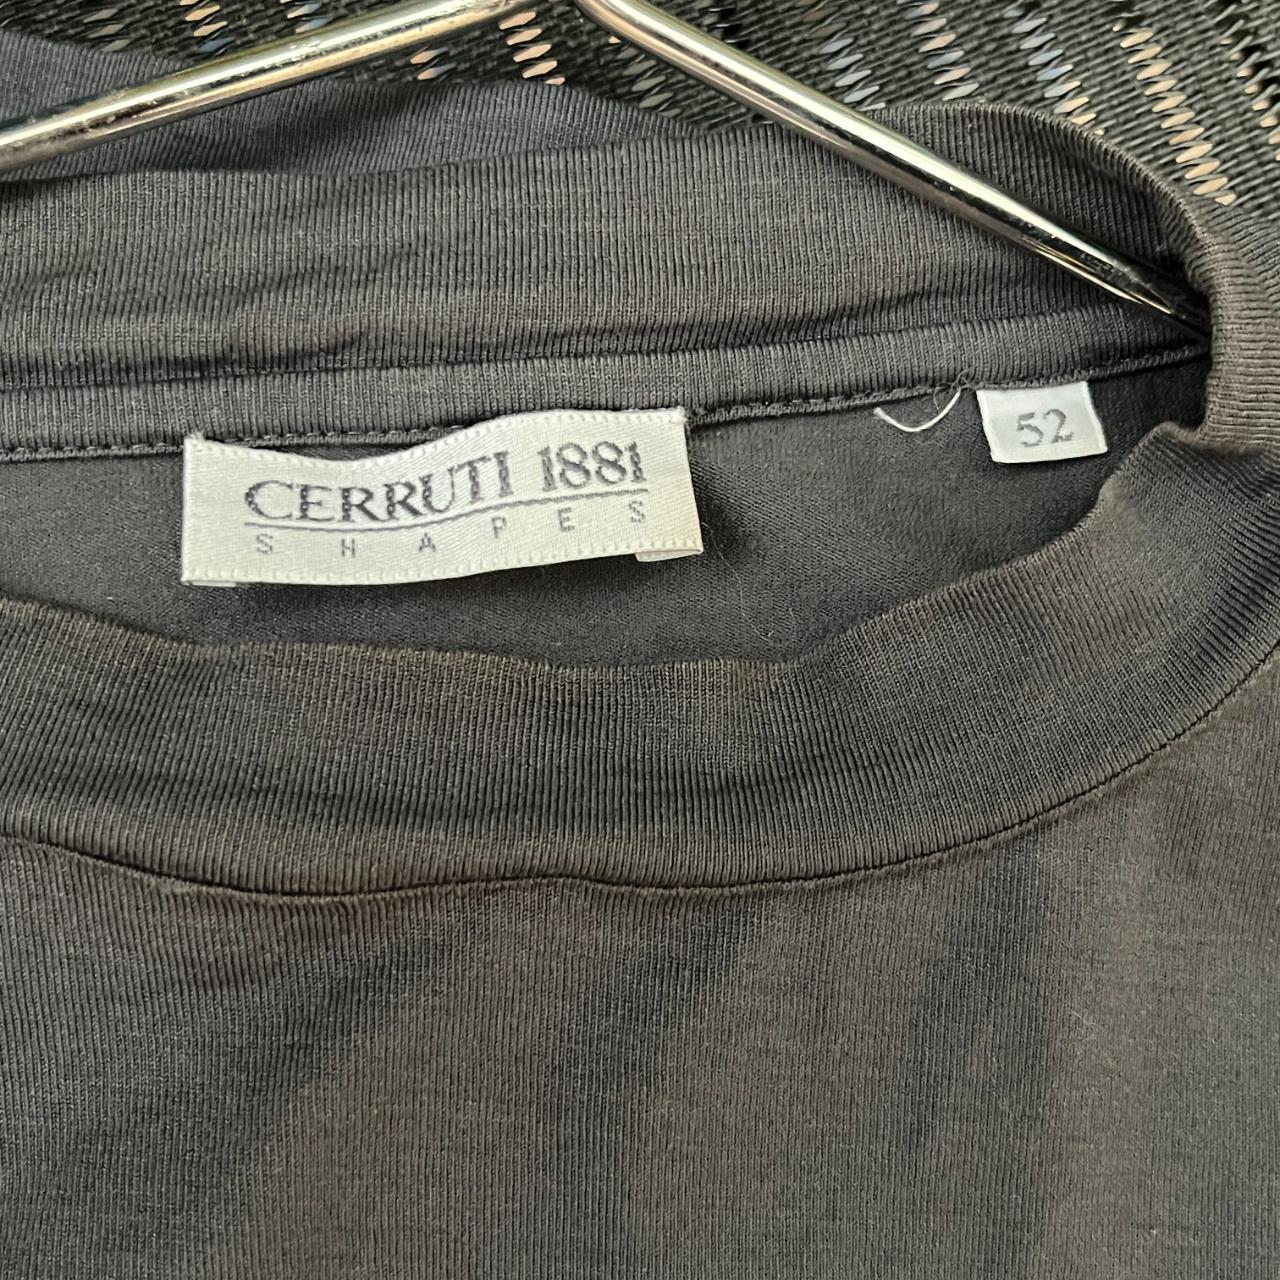 Vtg Cerruti 1881 Shapes t-shirt Dark grey/faded... - Depop